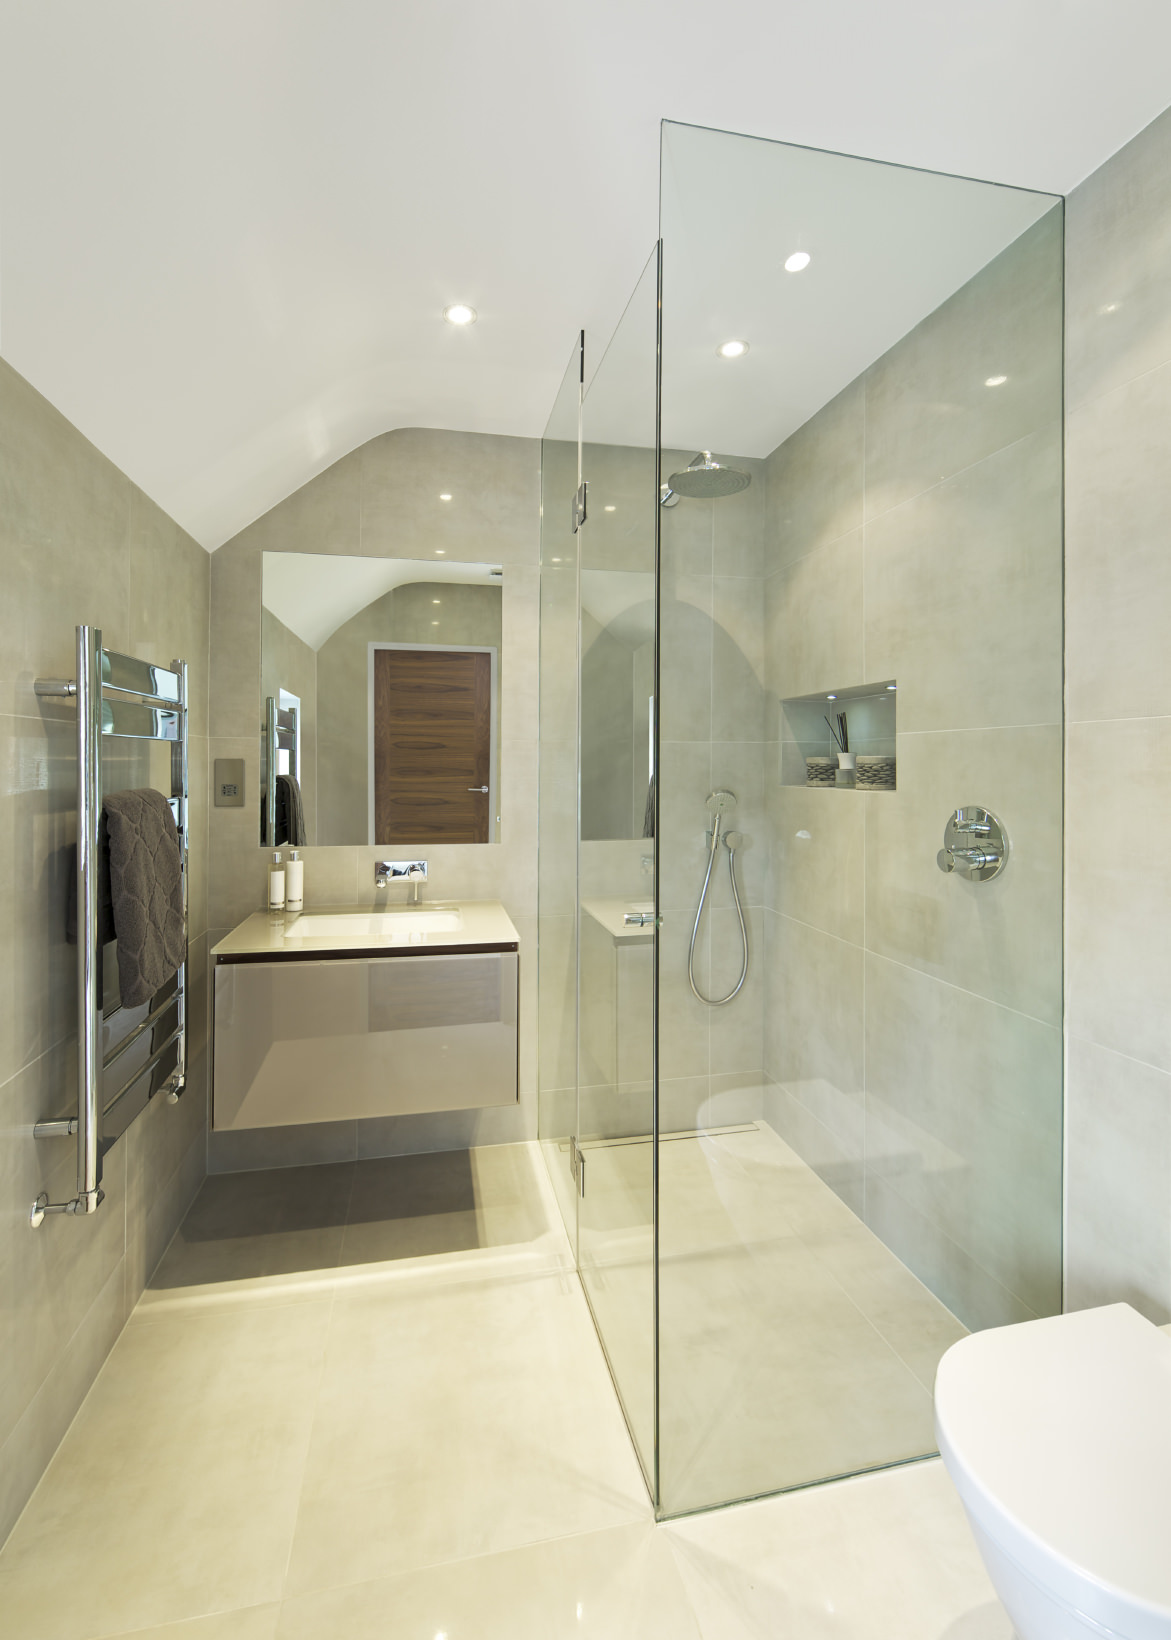 无框的镜子和无框的淋浴间使这个浴室看起来比实际更宽敞。再加上中性色调的瓷砖，你就拥有了一个时尚、清新的浴室。